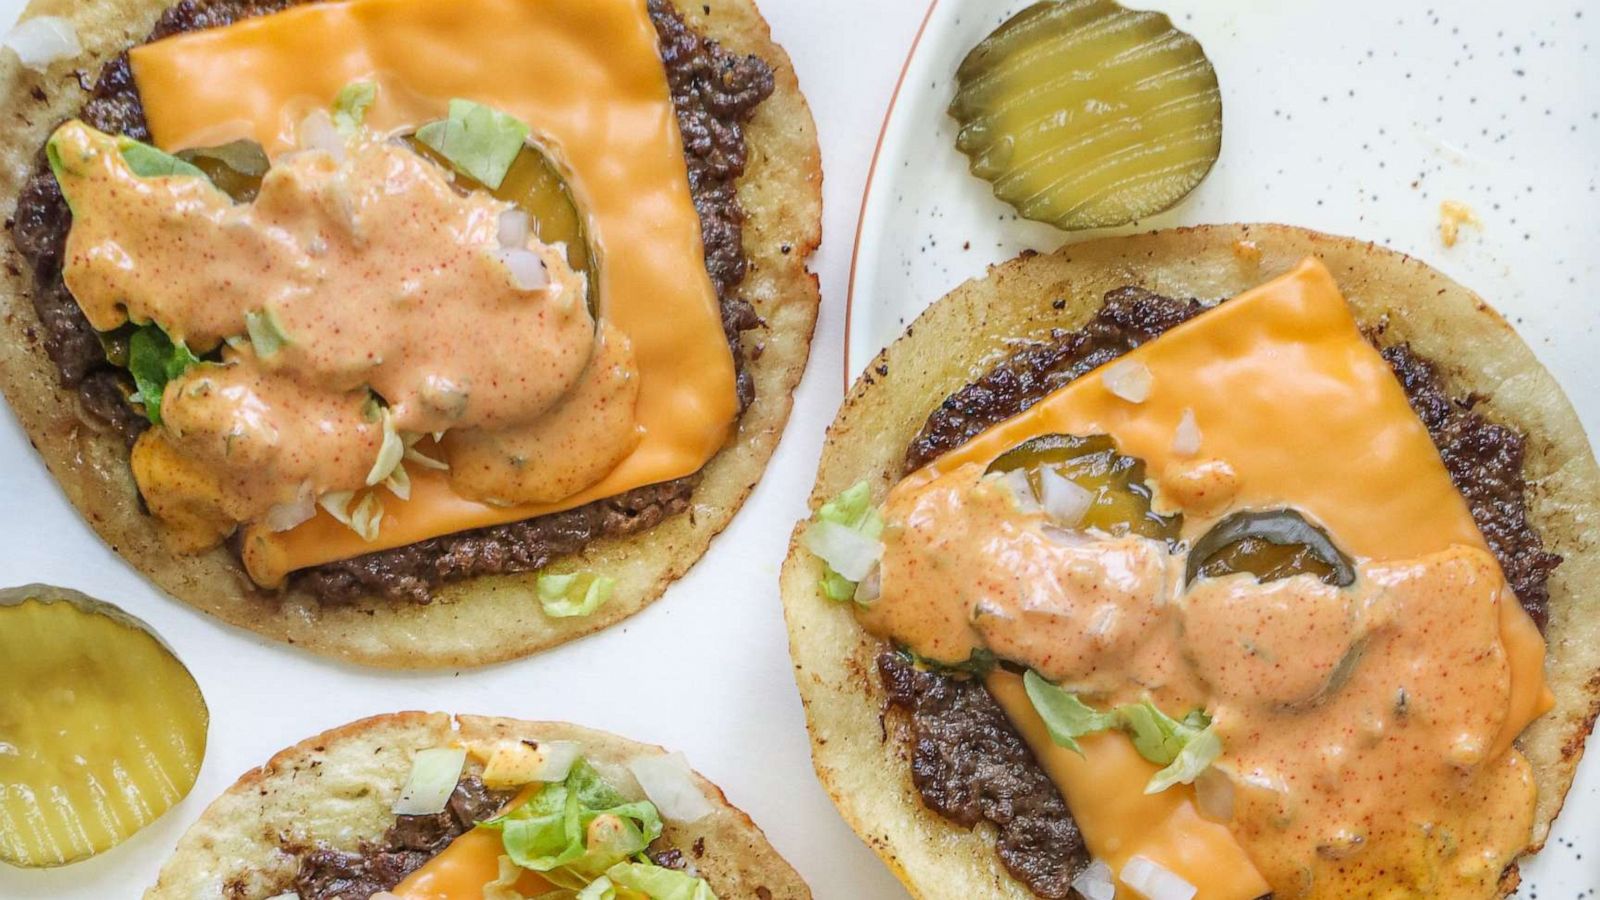 Nouveaux snack Burger, tacos, Panini, américain - Picture of